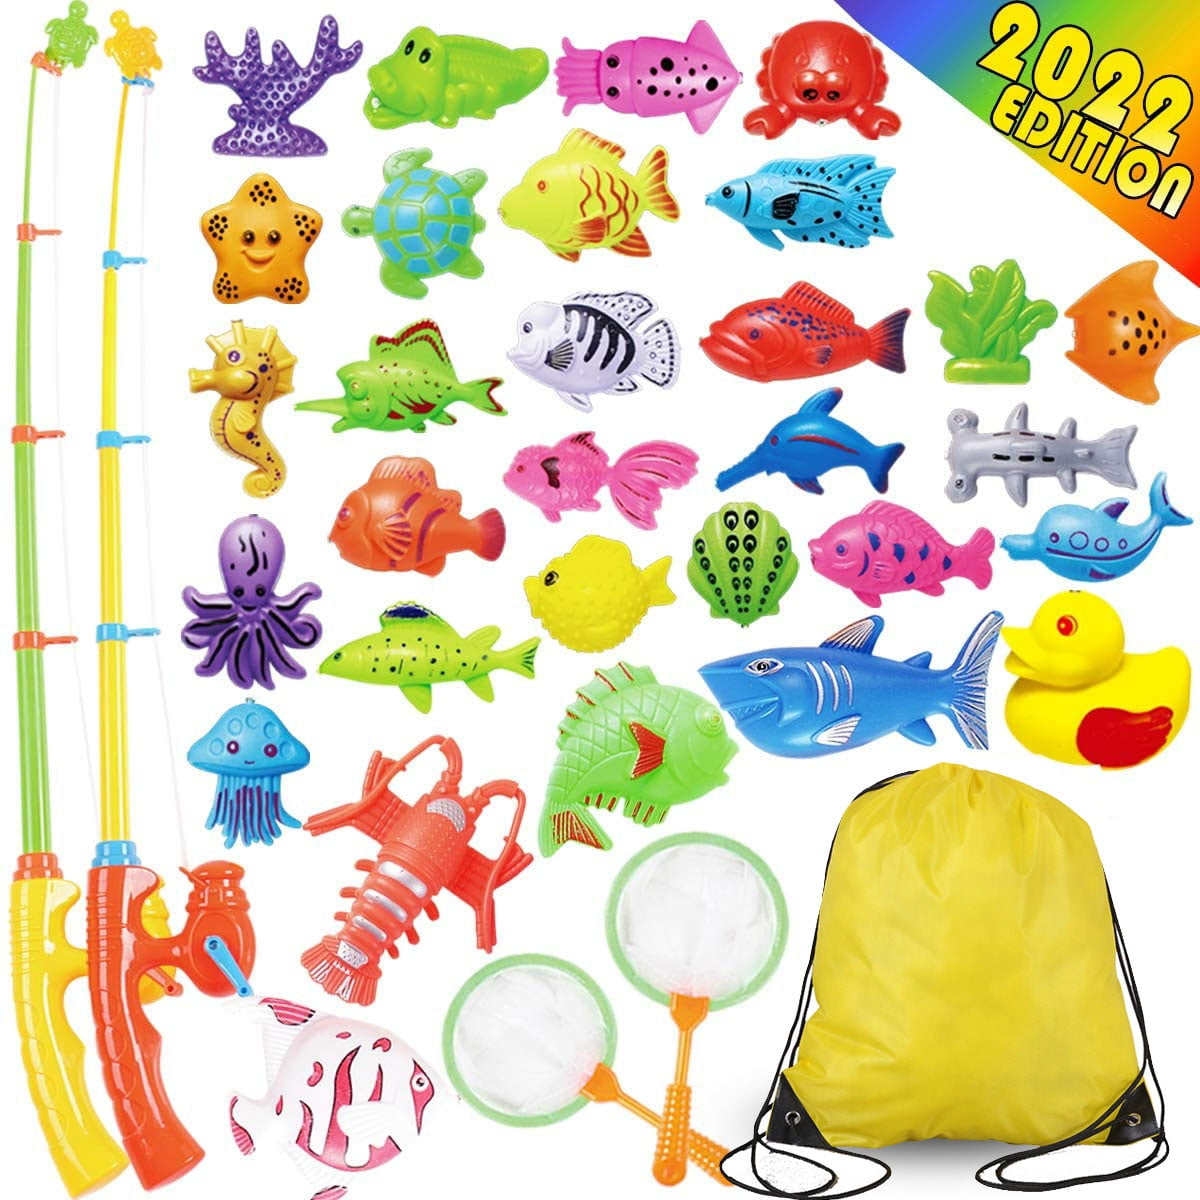 40 Pcs Magnetic Fishing Toys Game Set Learning Education Fishin